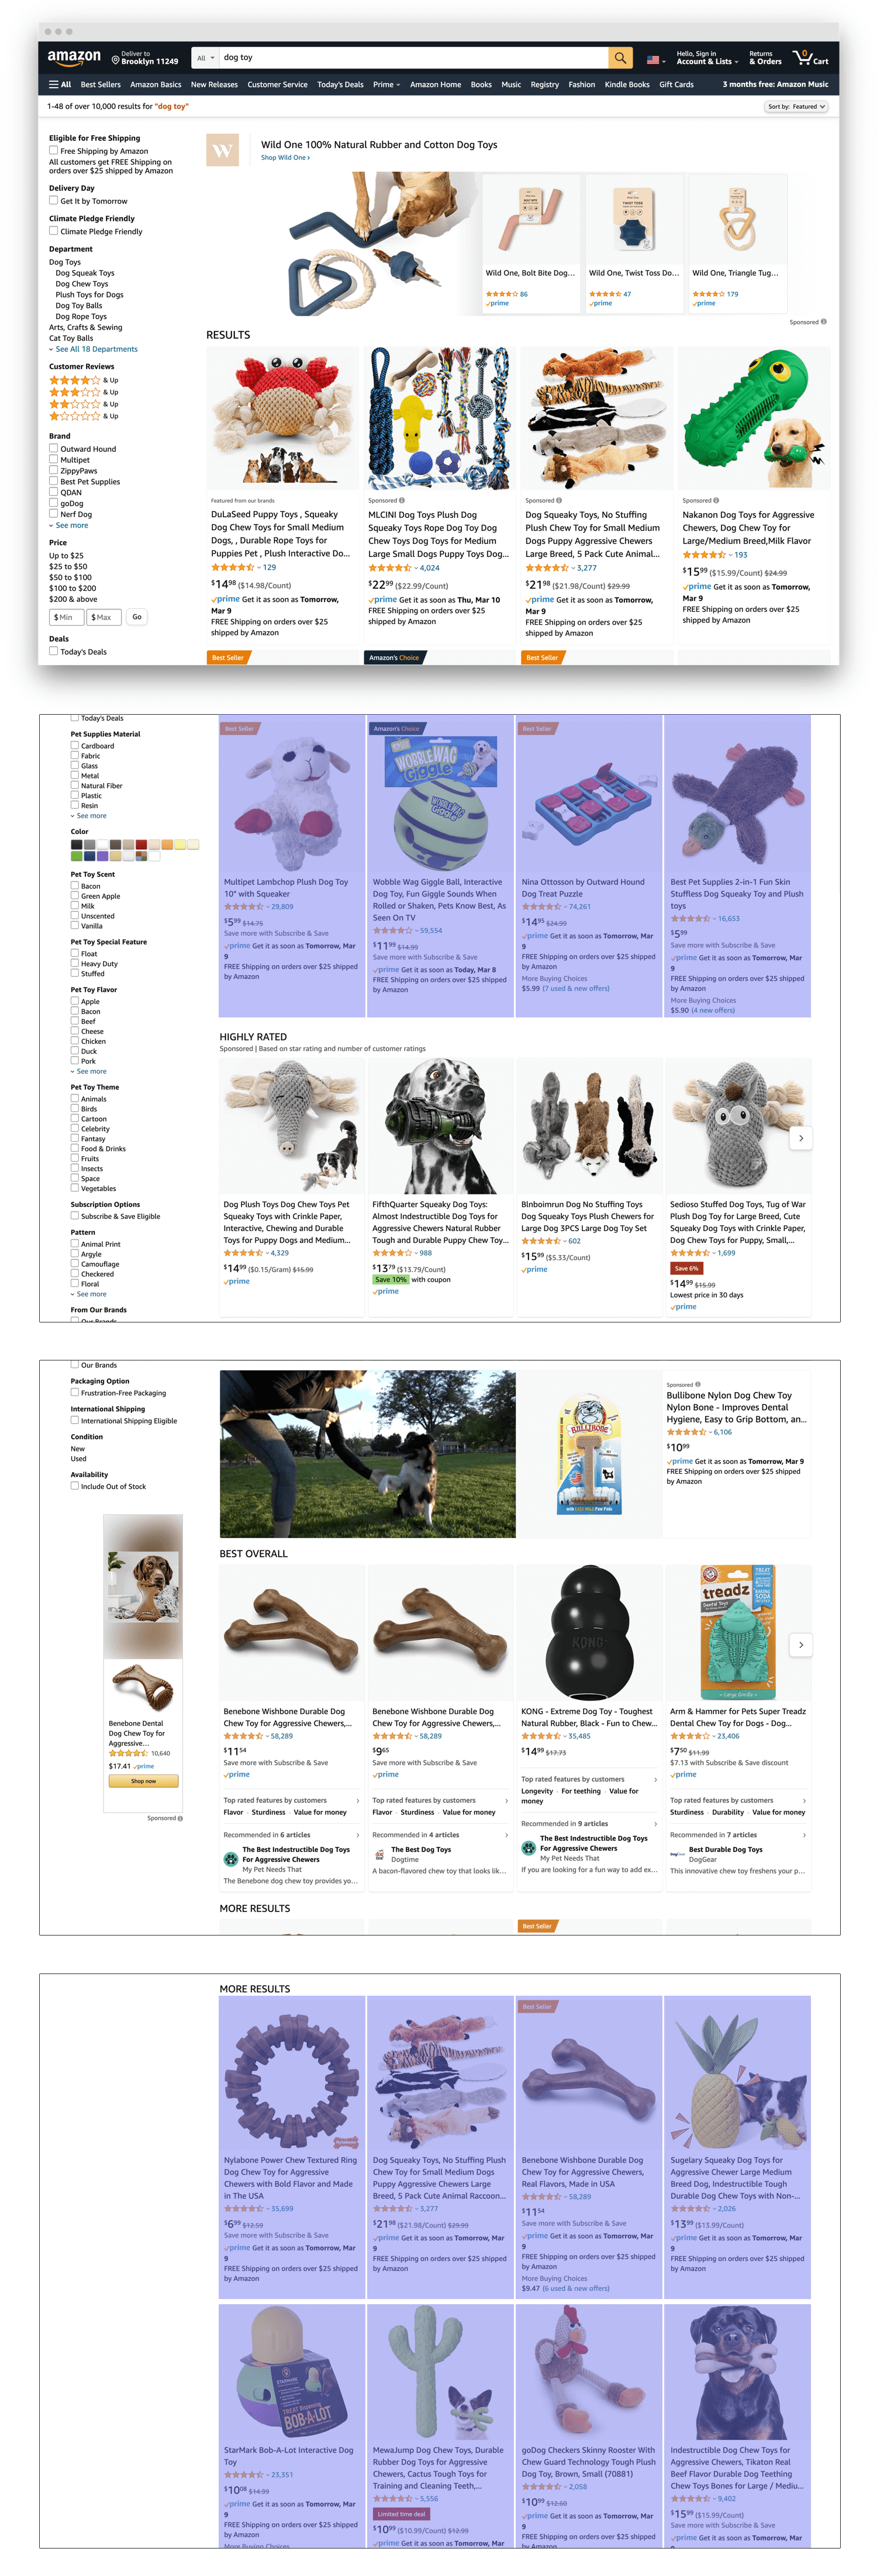 Resultados de búsqueda orgánicos de Amazon